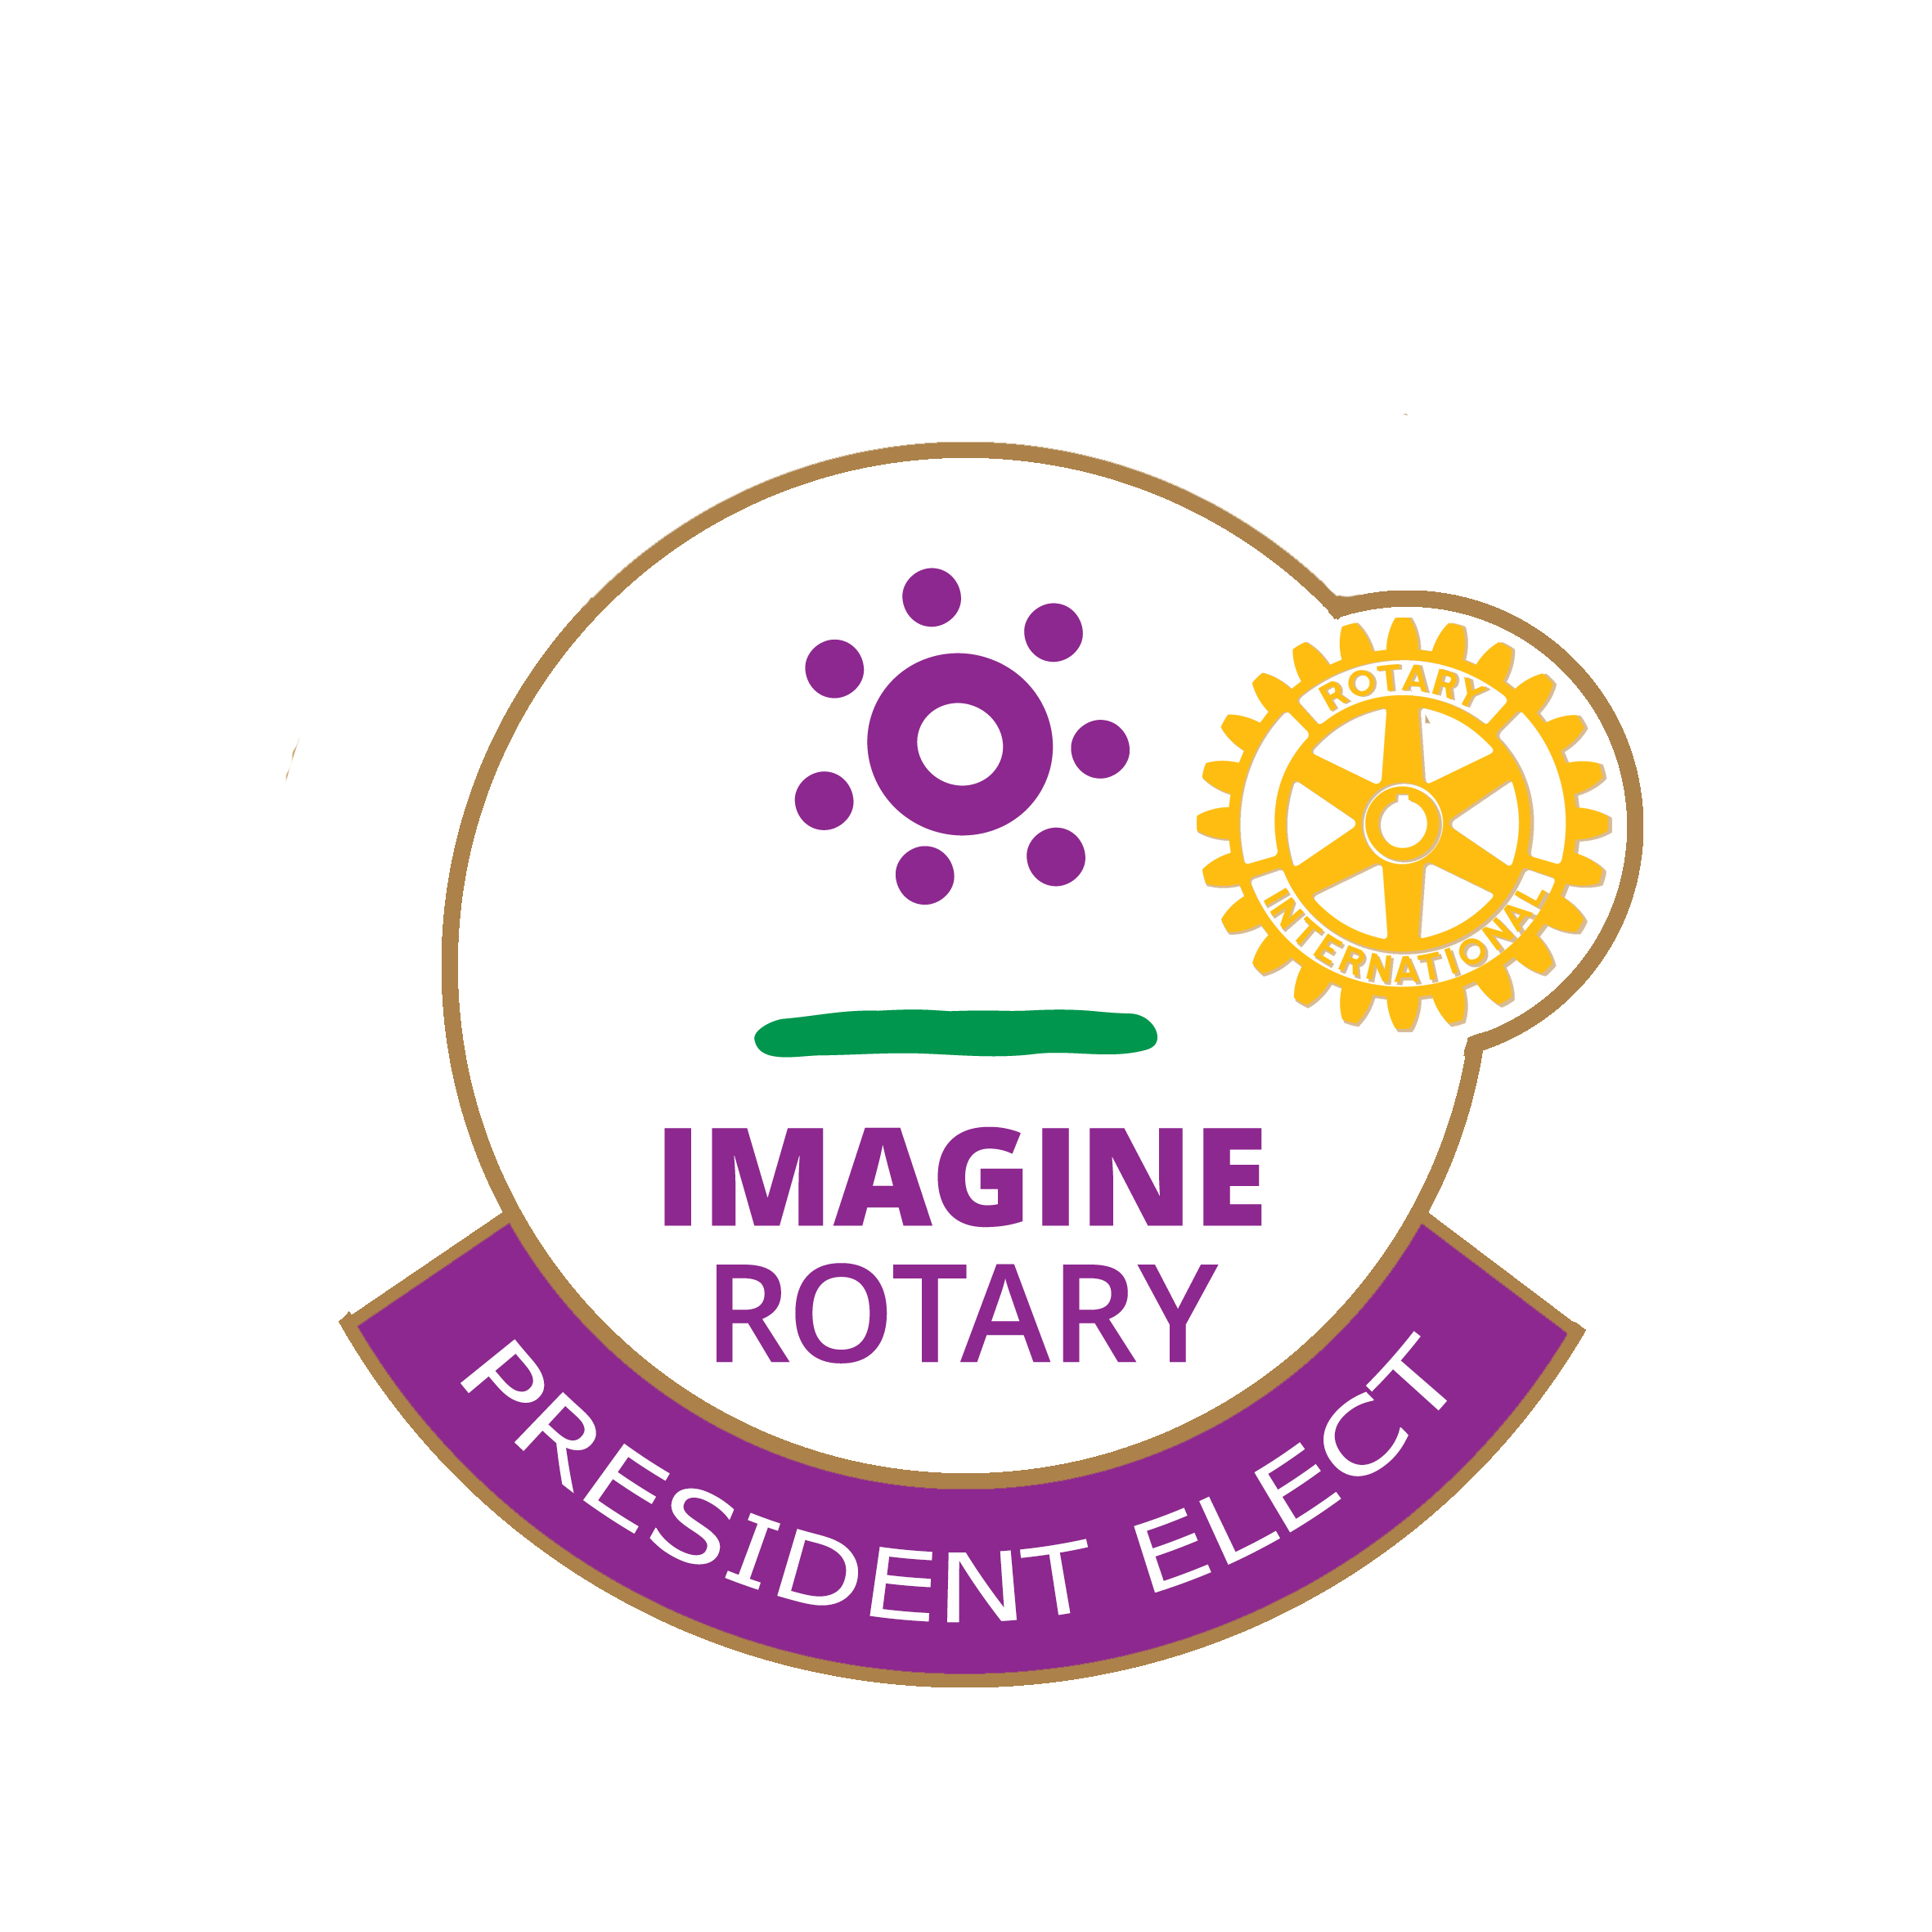 Theme 21/22 "President Elect" Pin